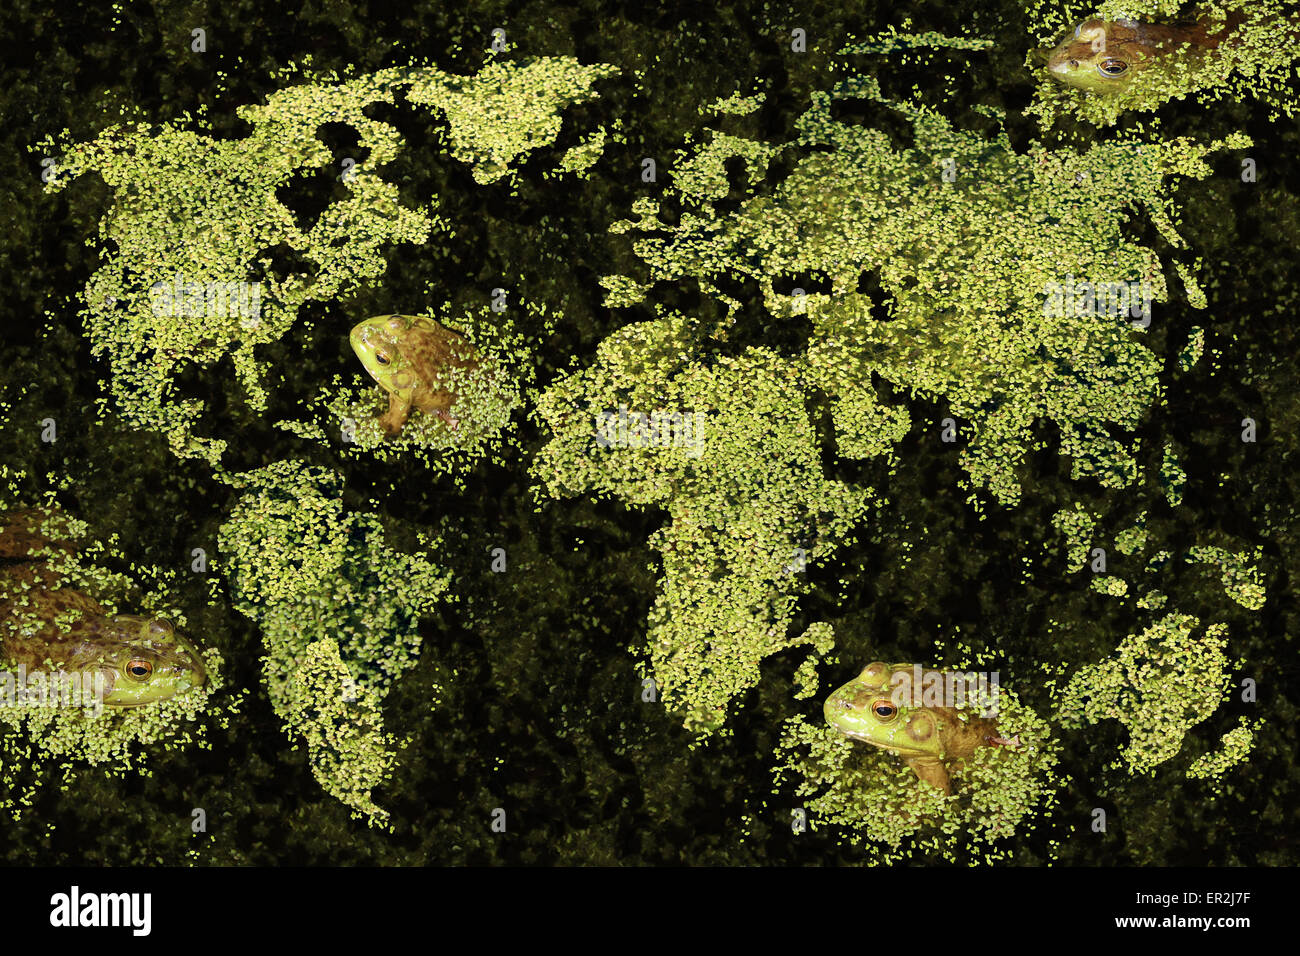 Globale Lebensraum-Konzept und die Welt sauber grünen Umweltschutz mit Wasserlinsen oder aquatische Pflanzen Karte des Planeten Stockfoto